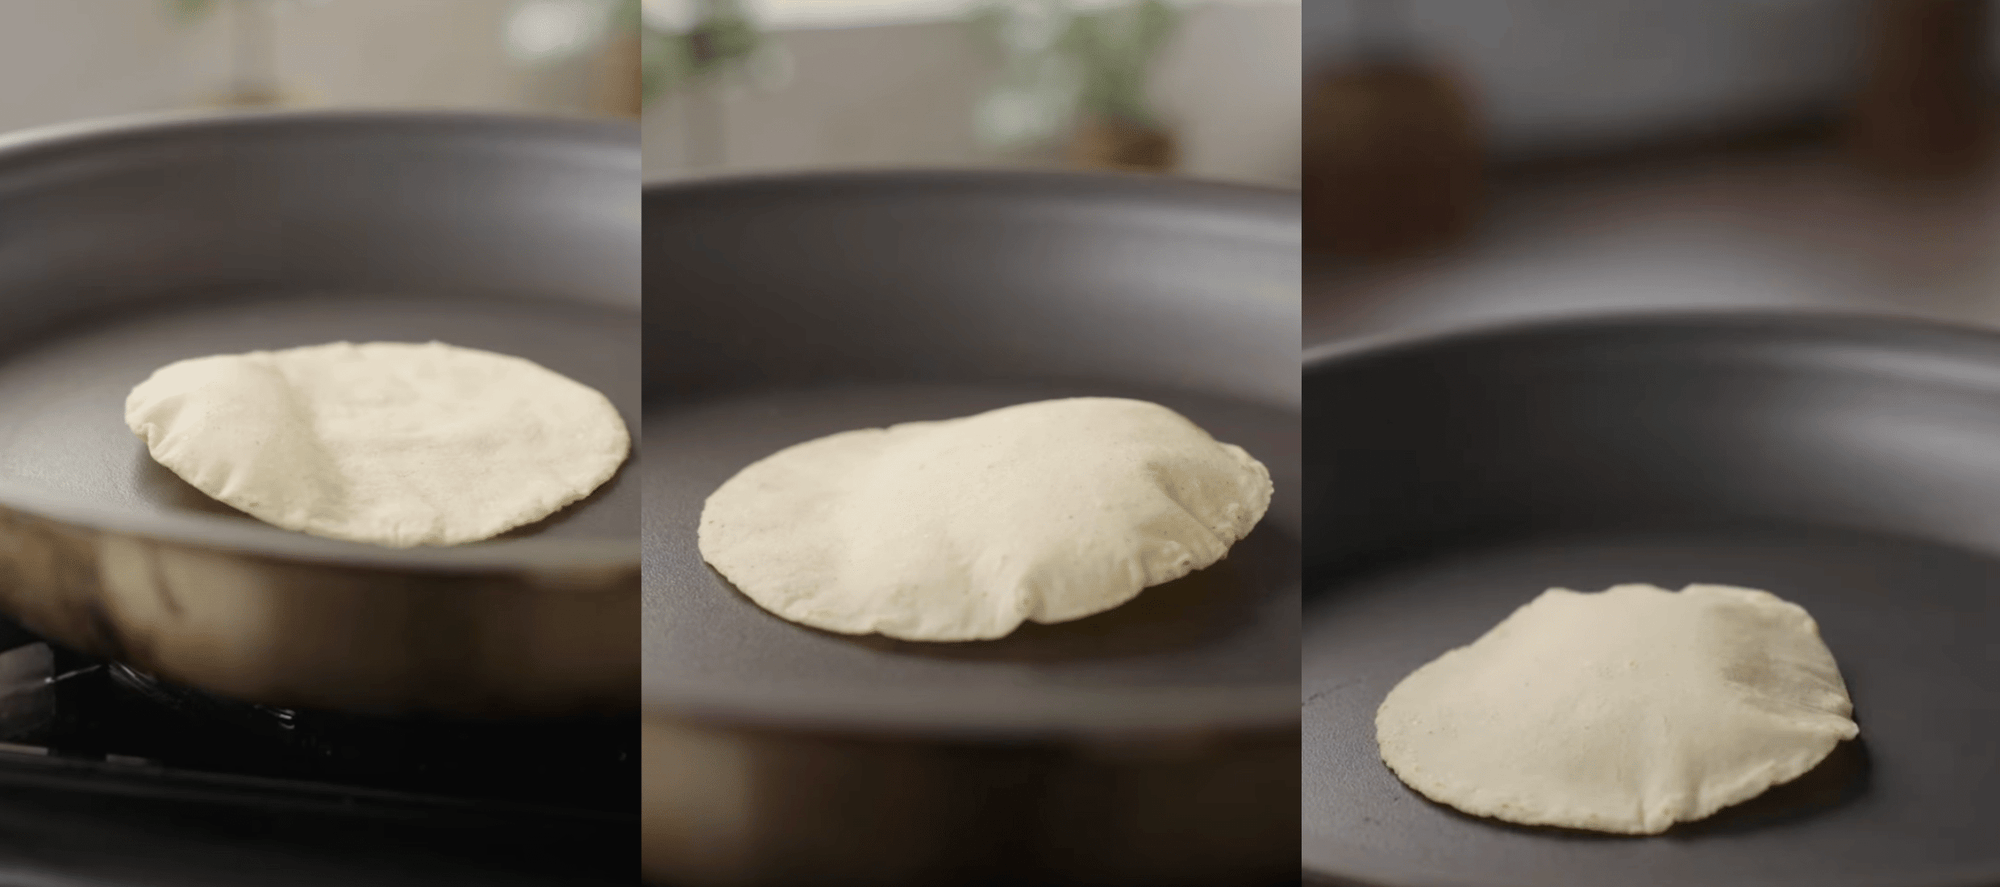 Cómo conseguir que las tortillas se hinchen siempre